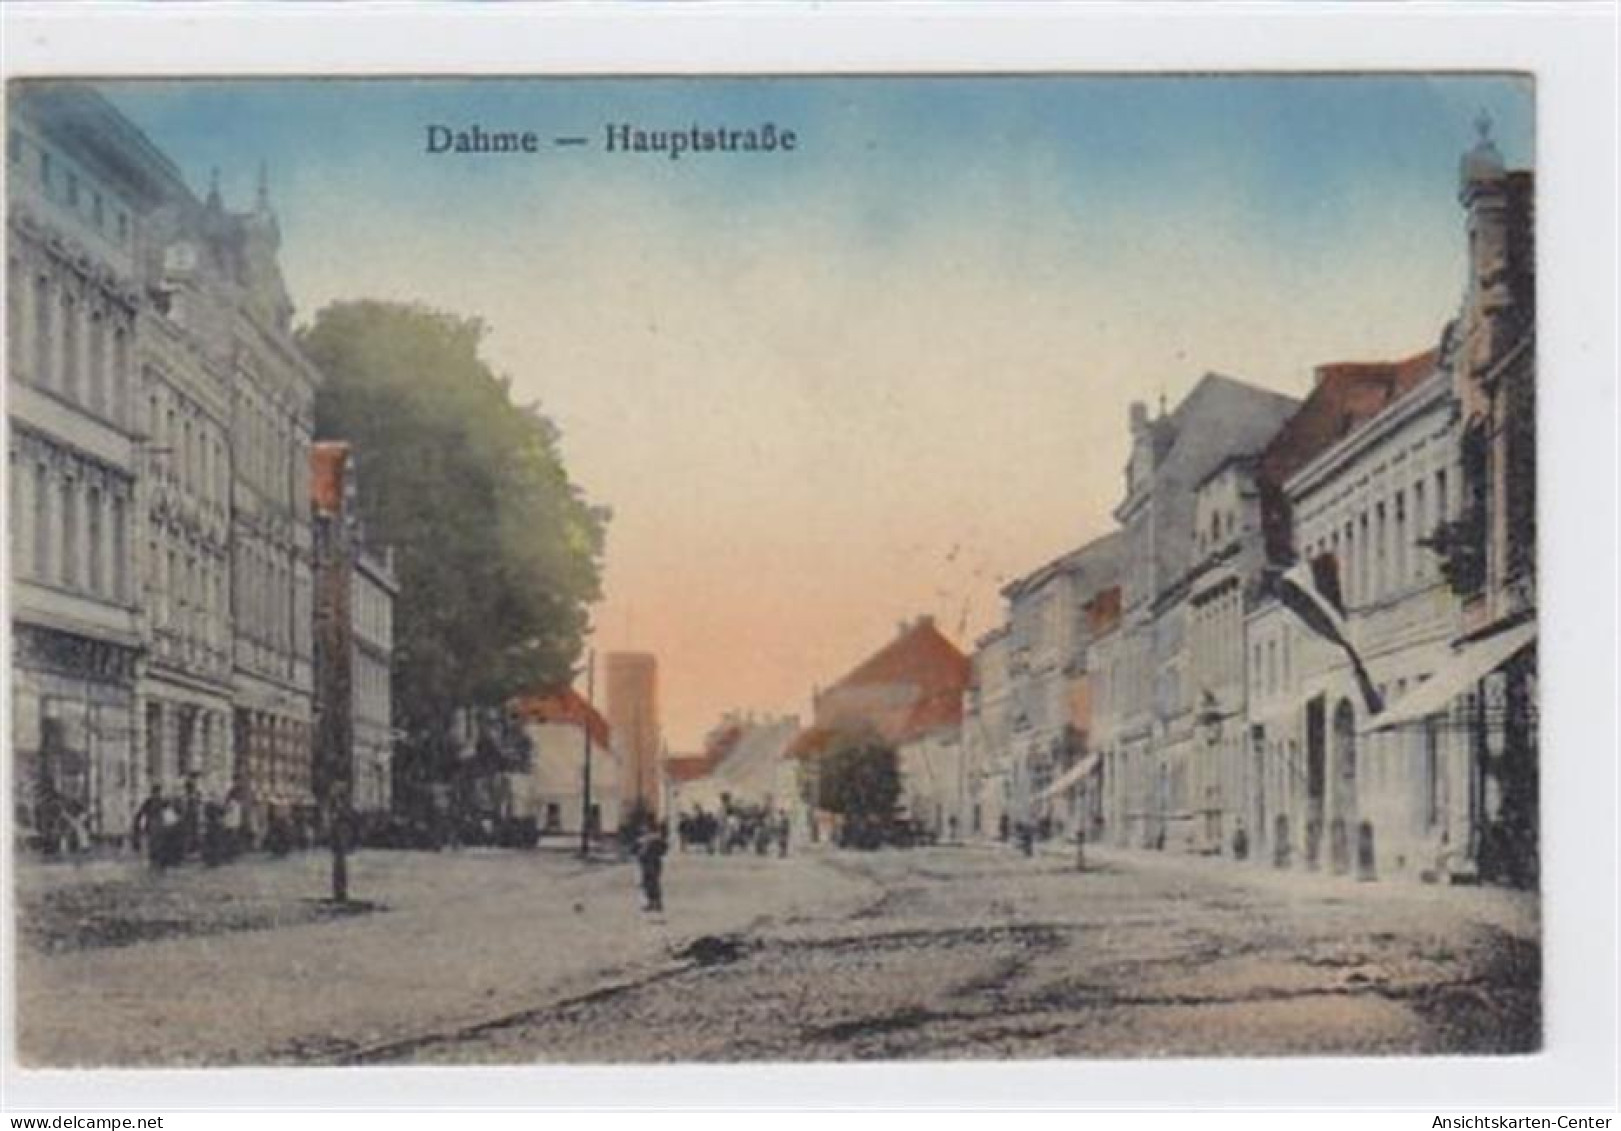 39016902 - Hauptstrasse In Dahme Gelaufen 1922. Leichter Bug Oben Rechts, Sonst Gut Erhalten. - Gross Leuthen